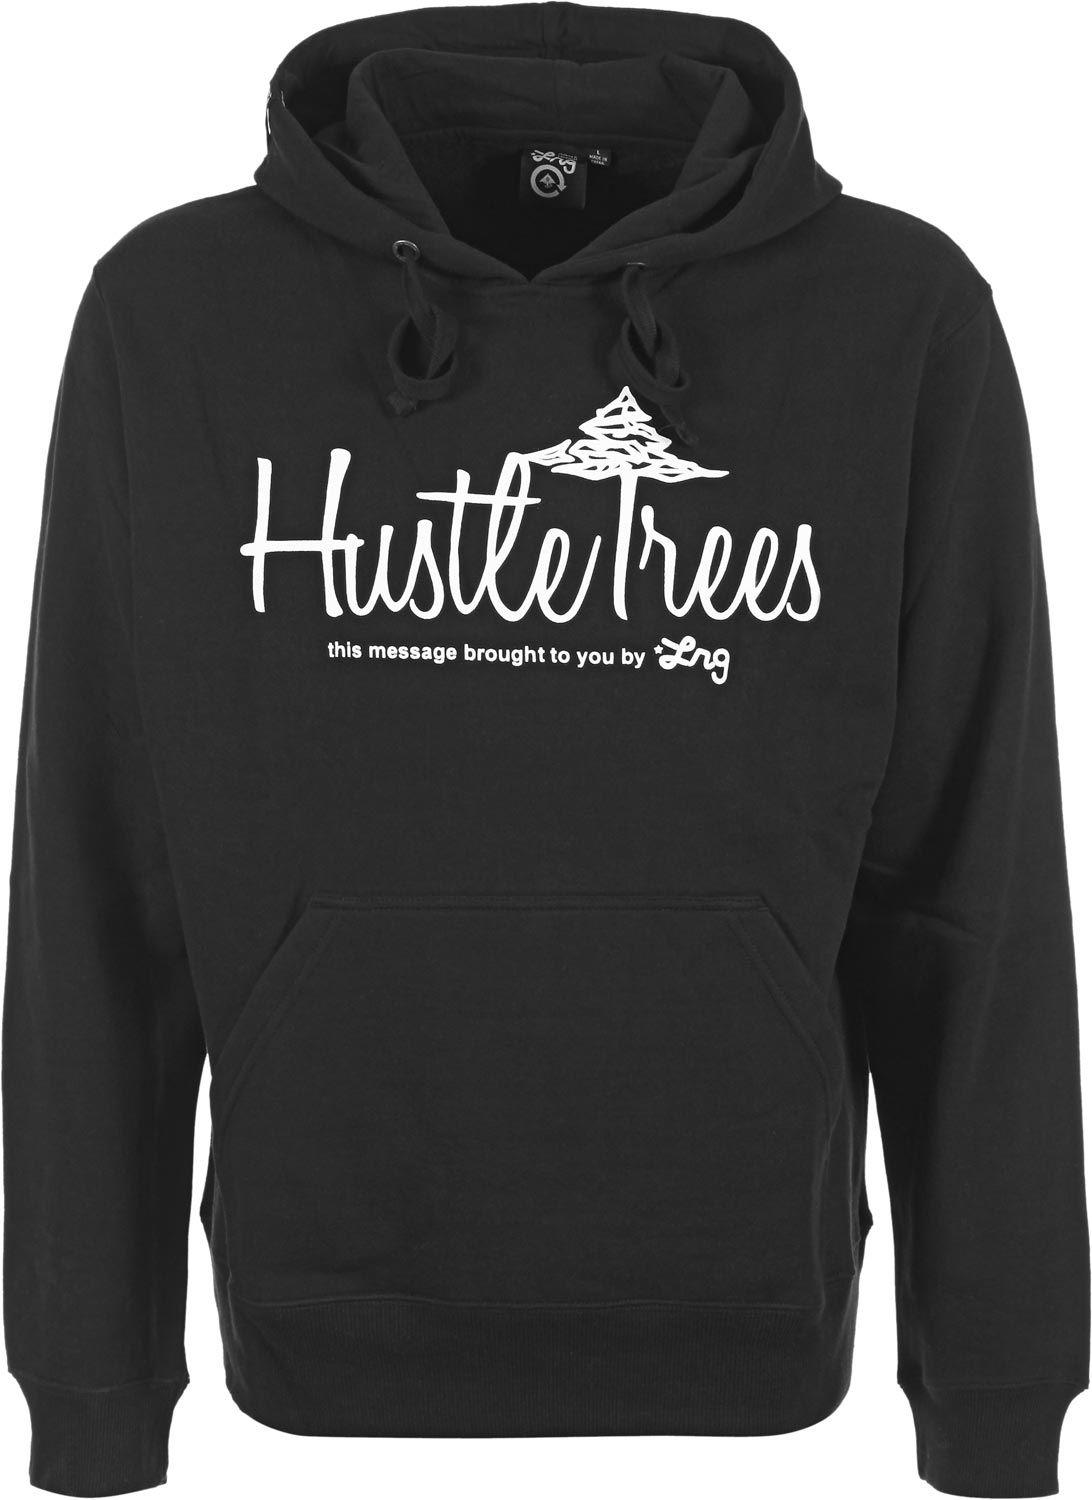 LRG Hustle Trees Logo - LRG CC Hustle Trees PO hoodie black